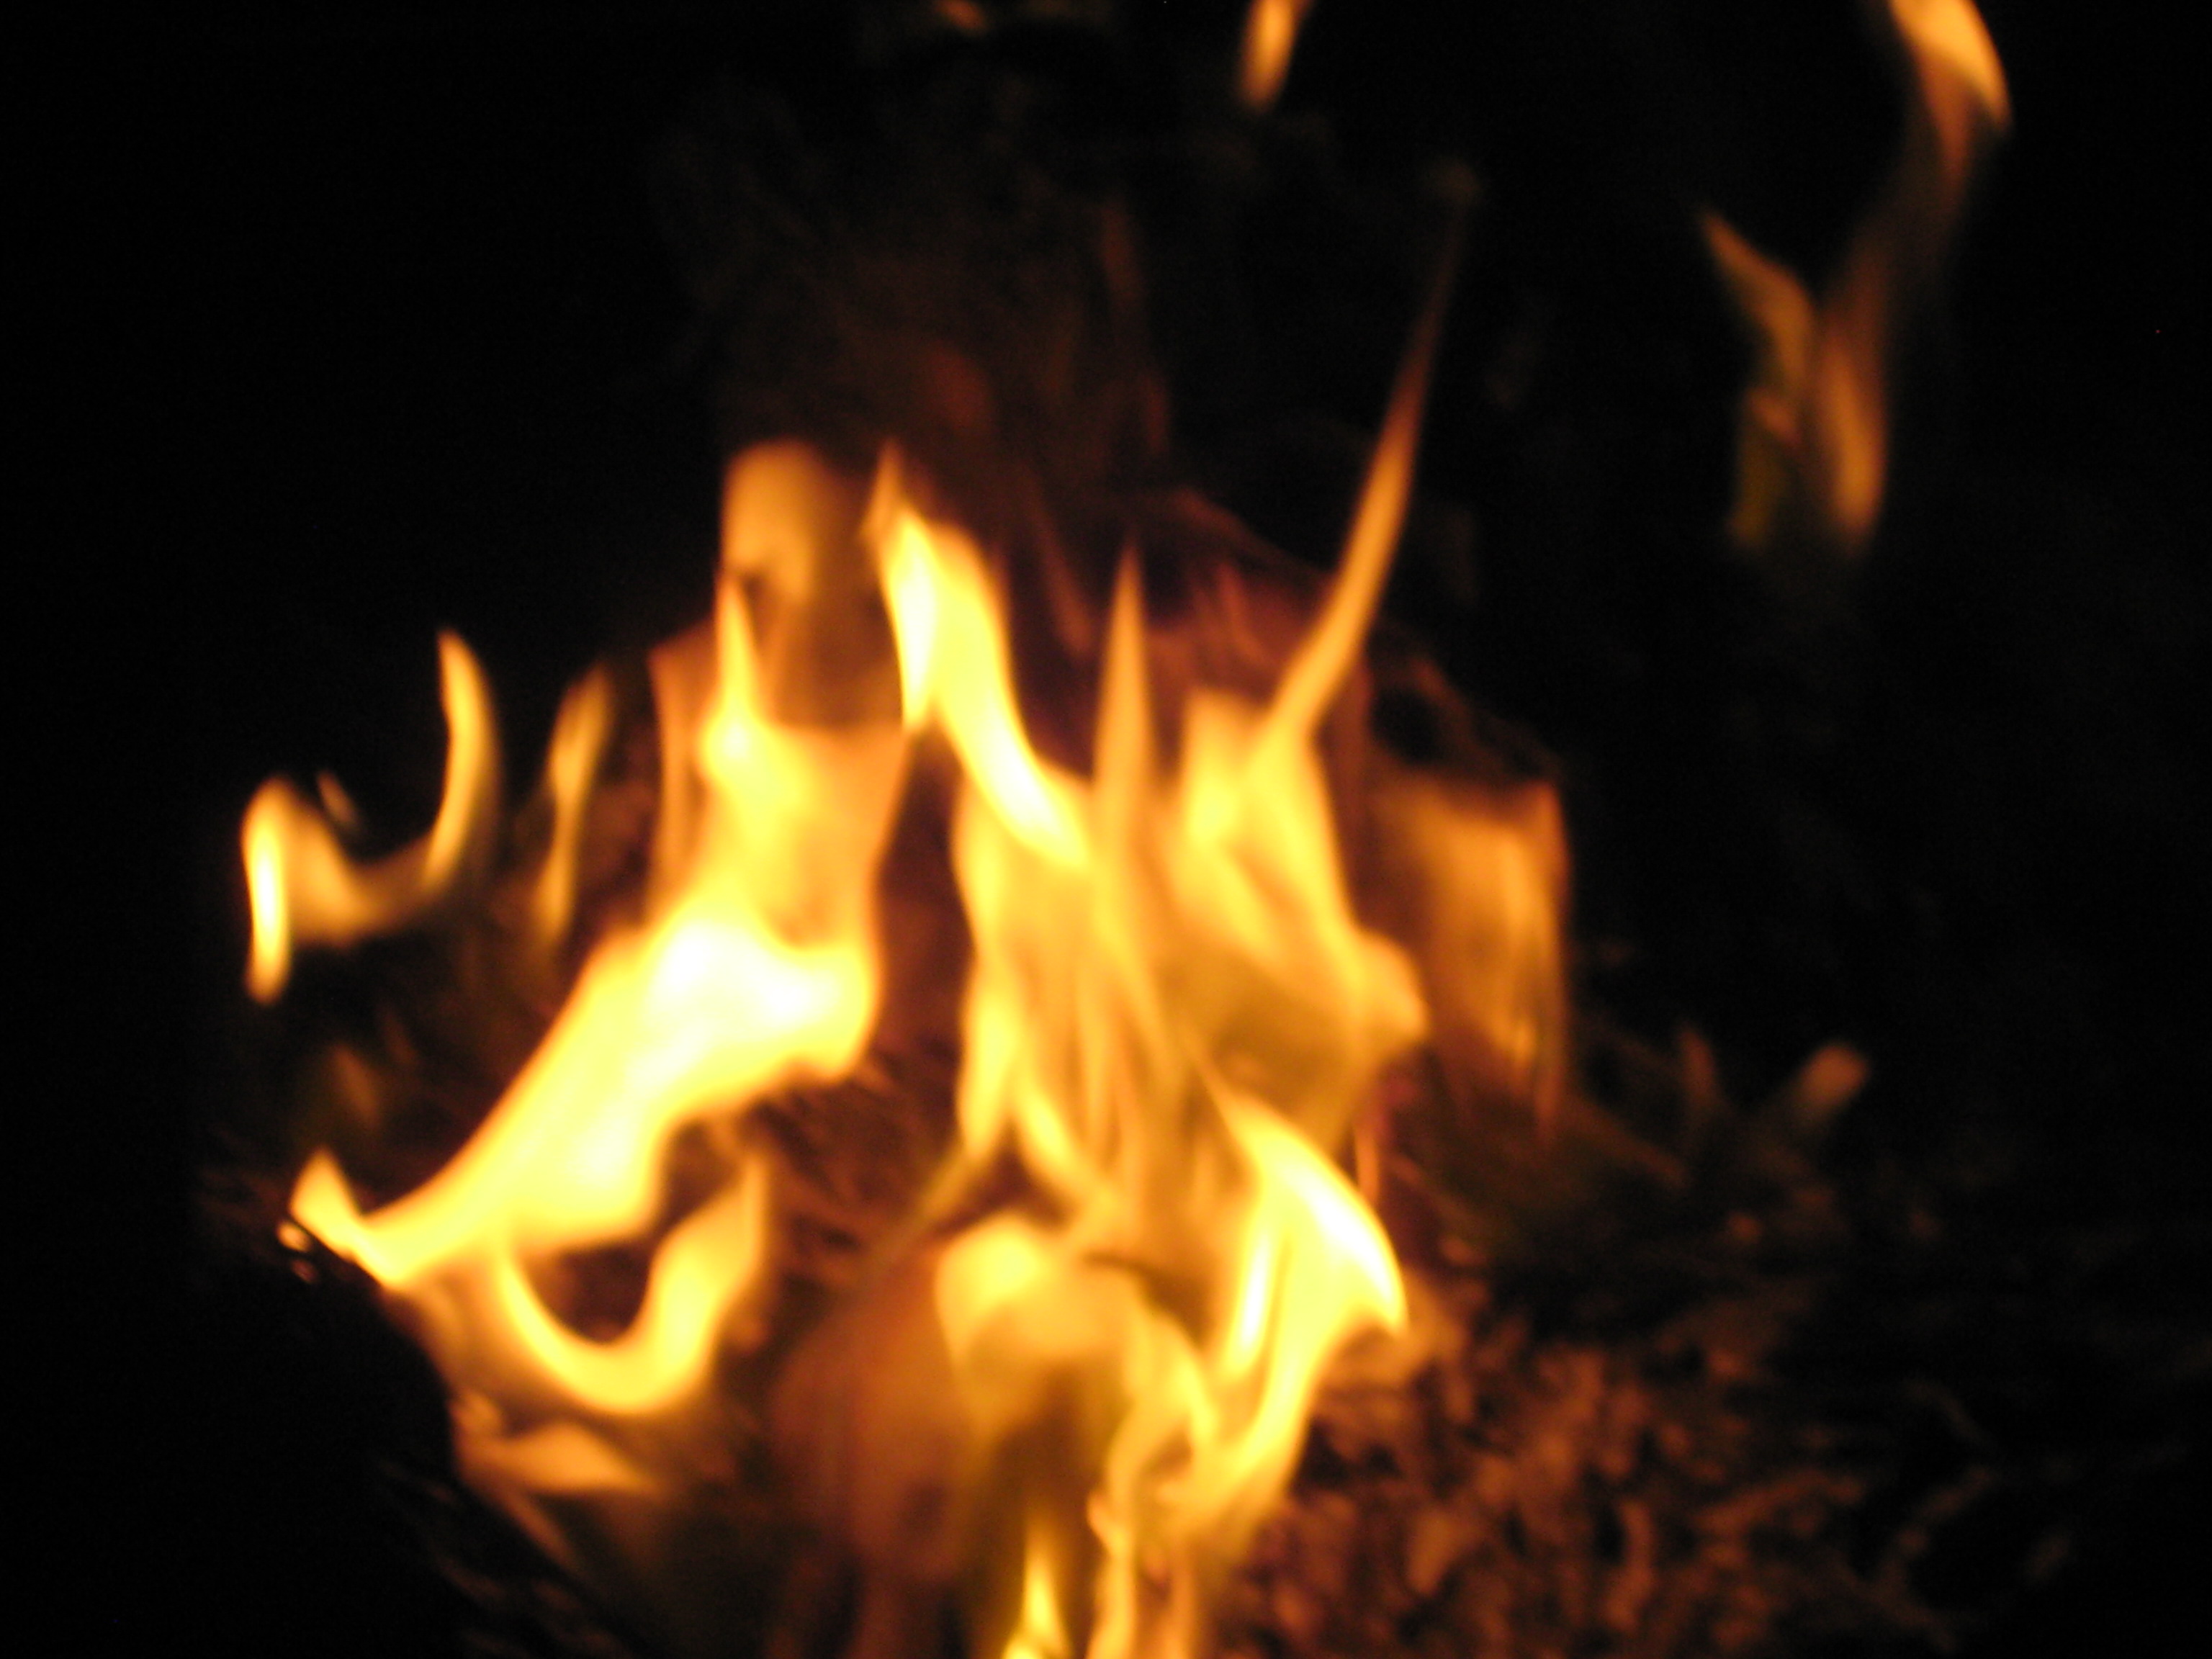 Daniel Cleary: “Fireside”